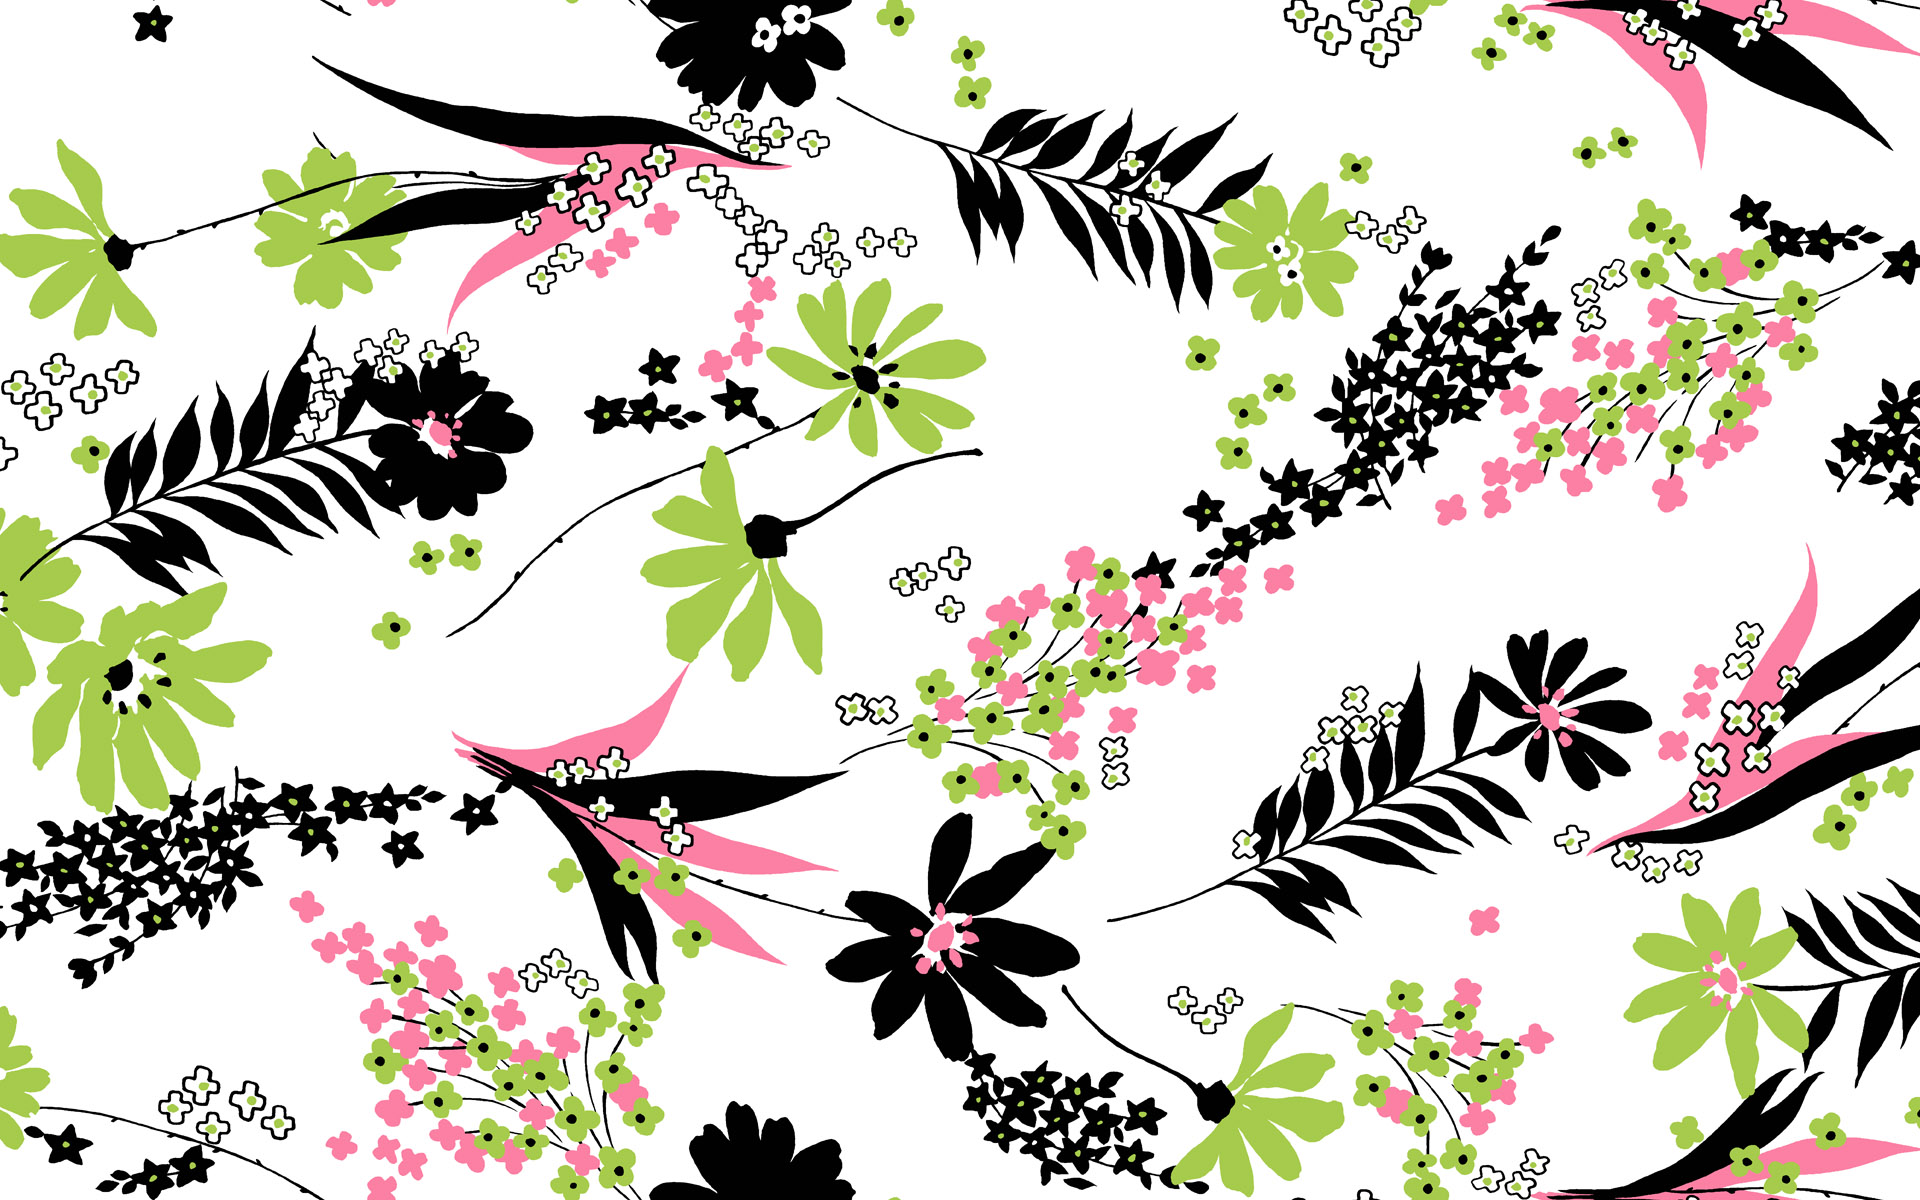 pattern desktop wallpaper,floral design,botany,pattern,design,plant